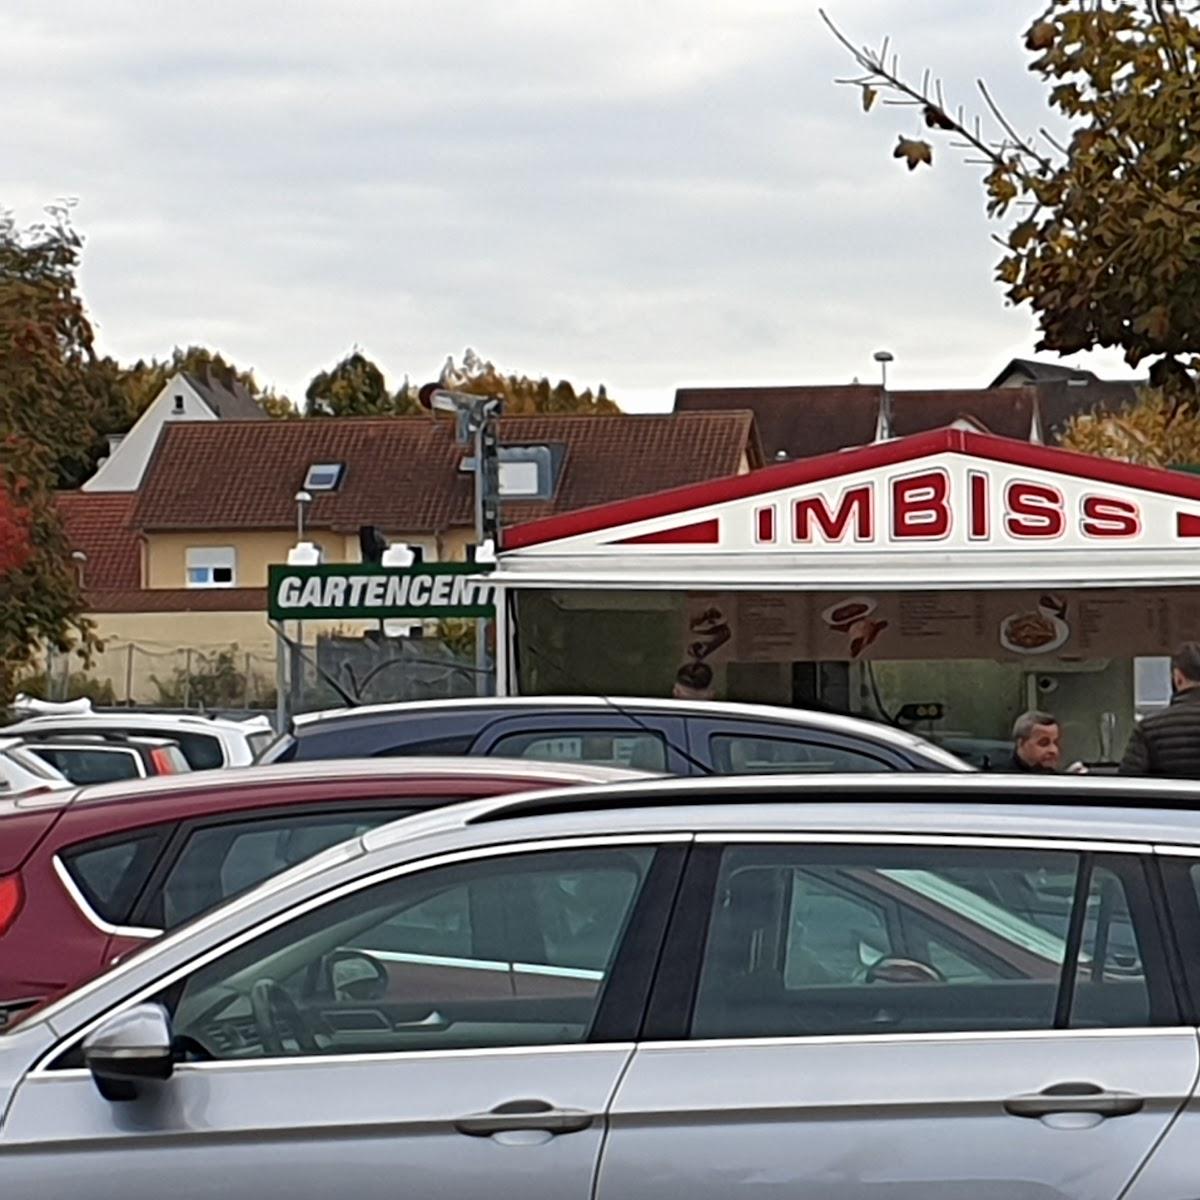 Restaurant "Taubertal Imbiss" in Bad Mergentheim